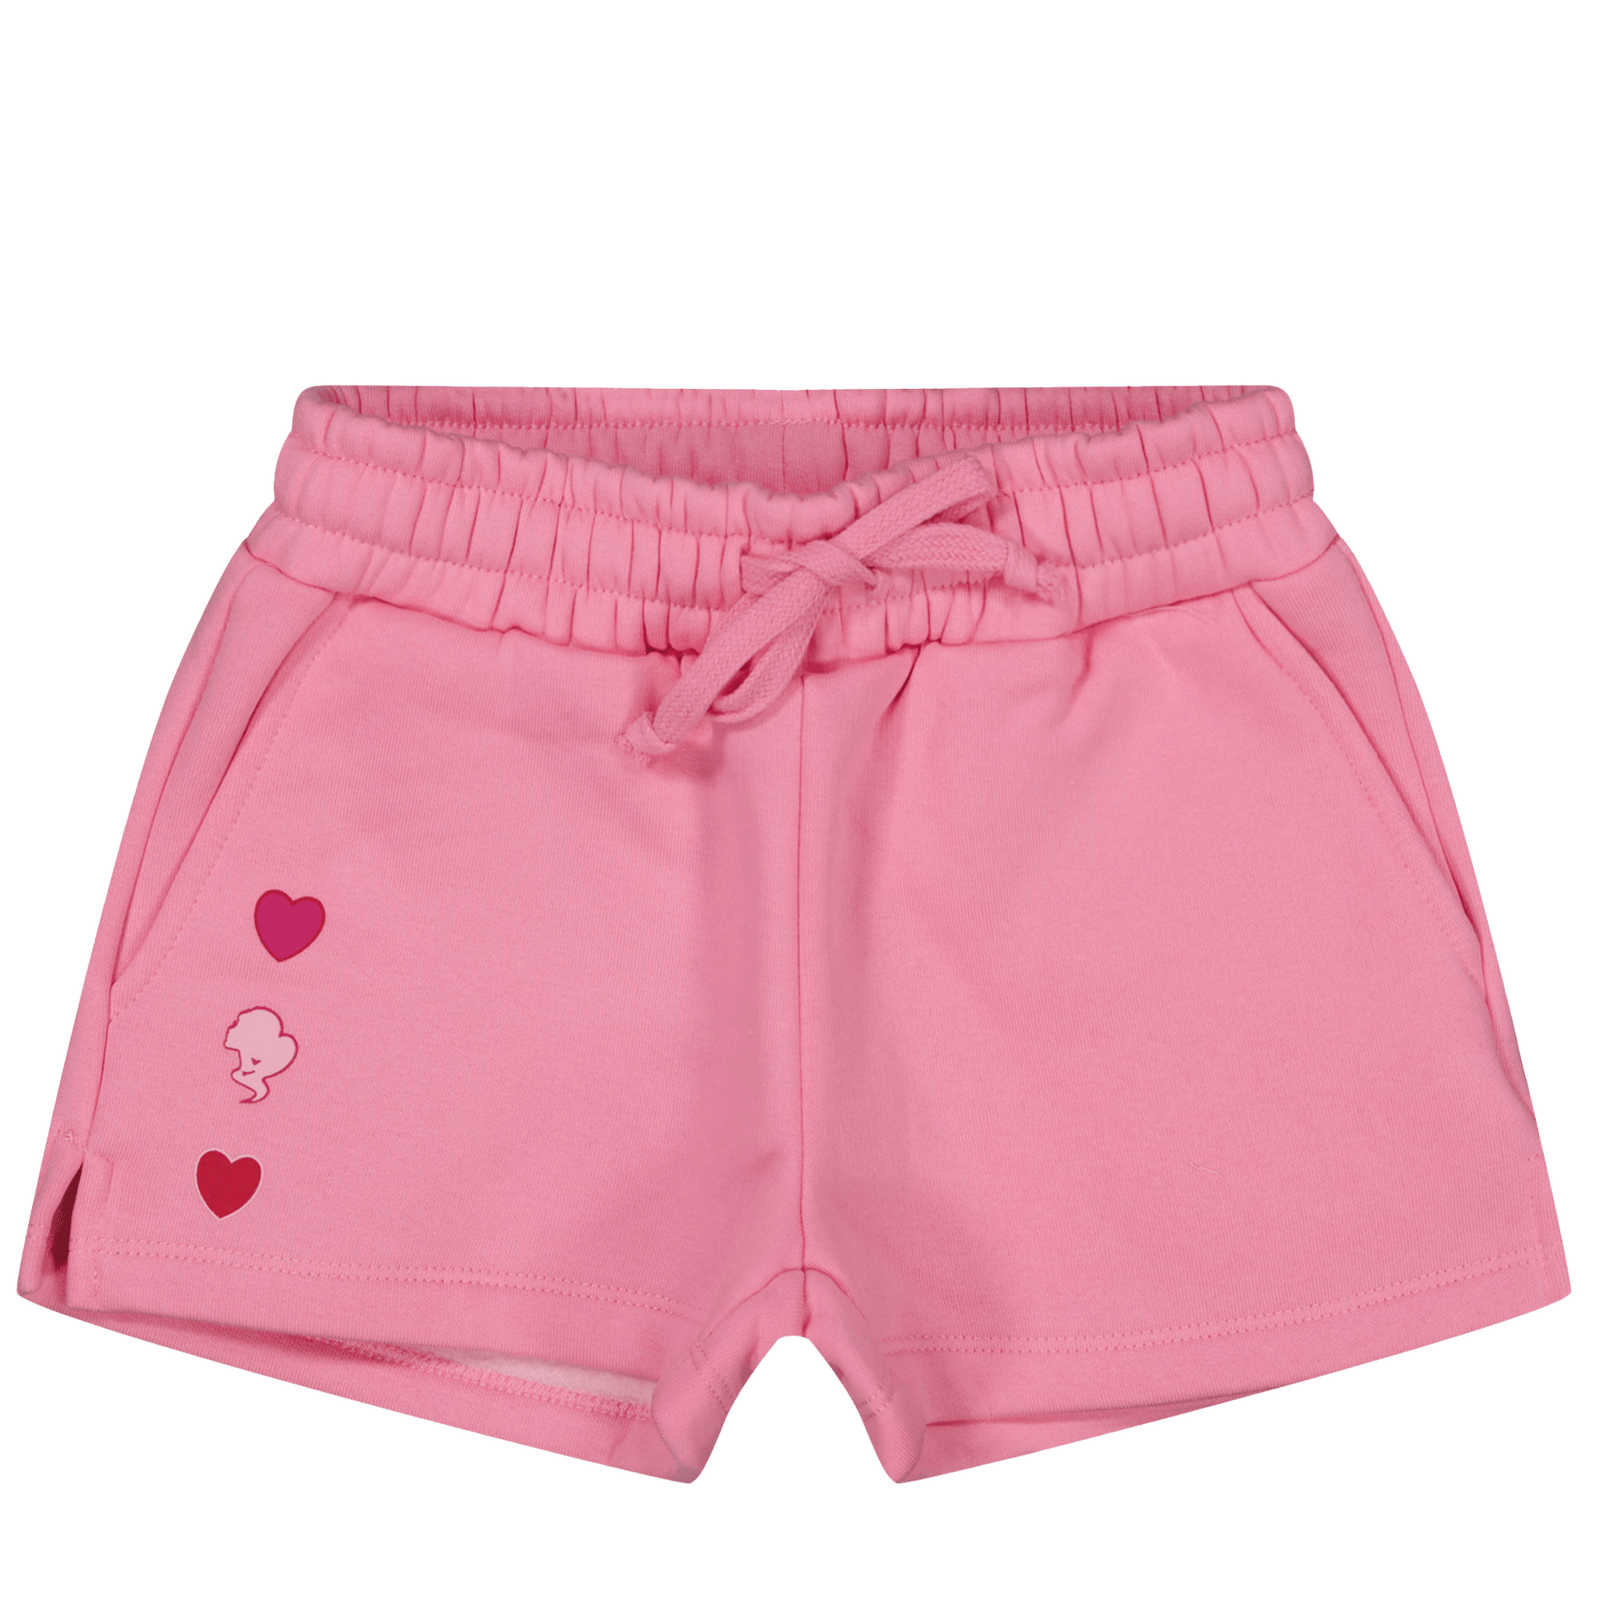 Reinders Kinder Meisjes Shorts Roze 4Y